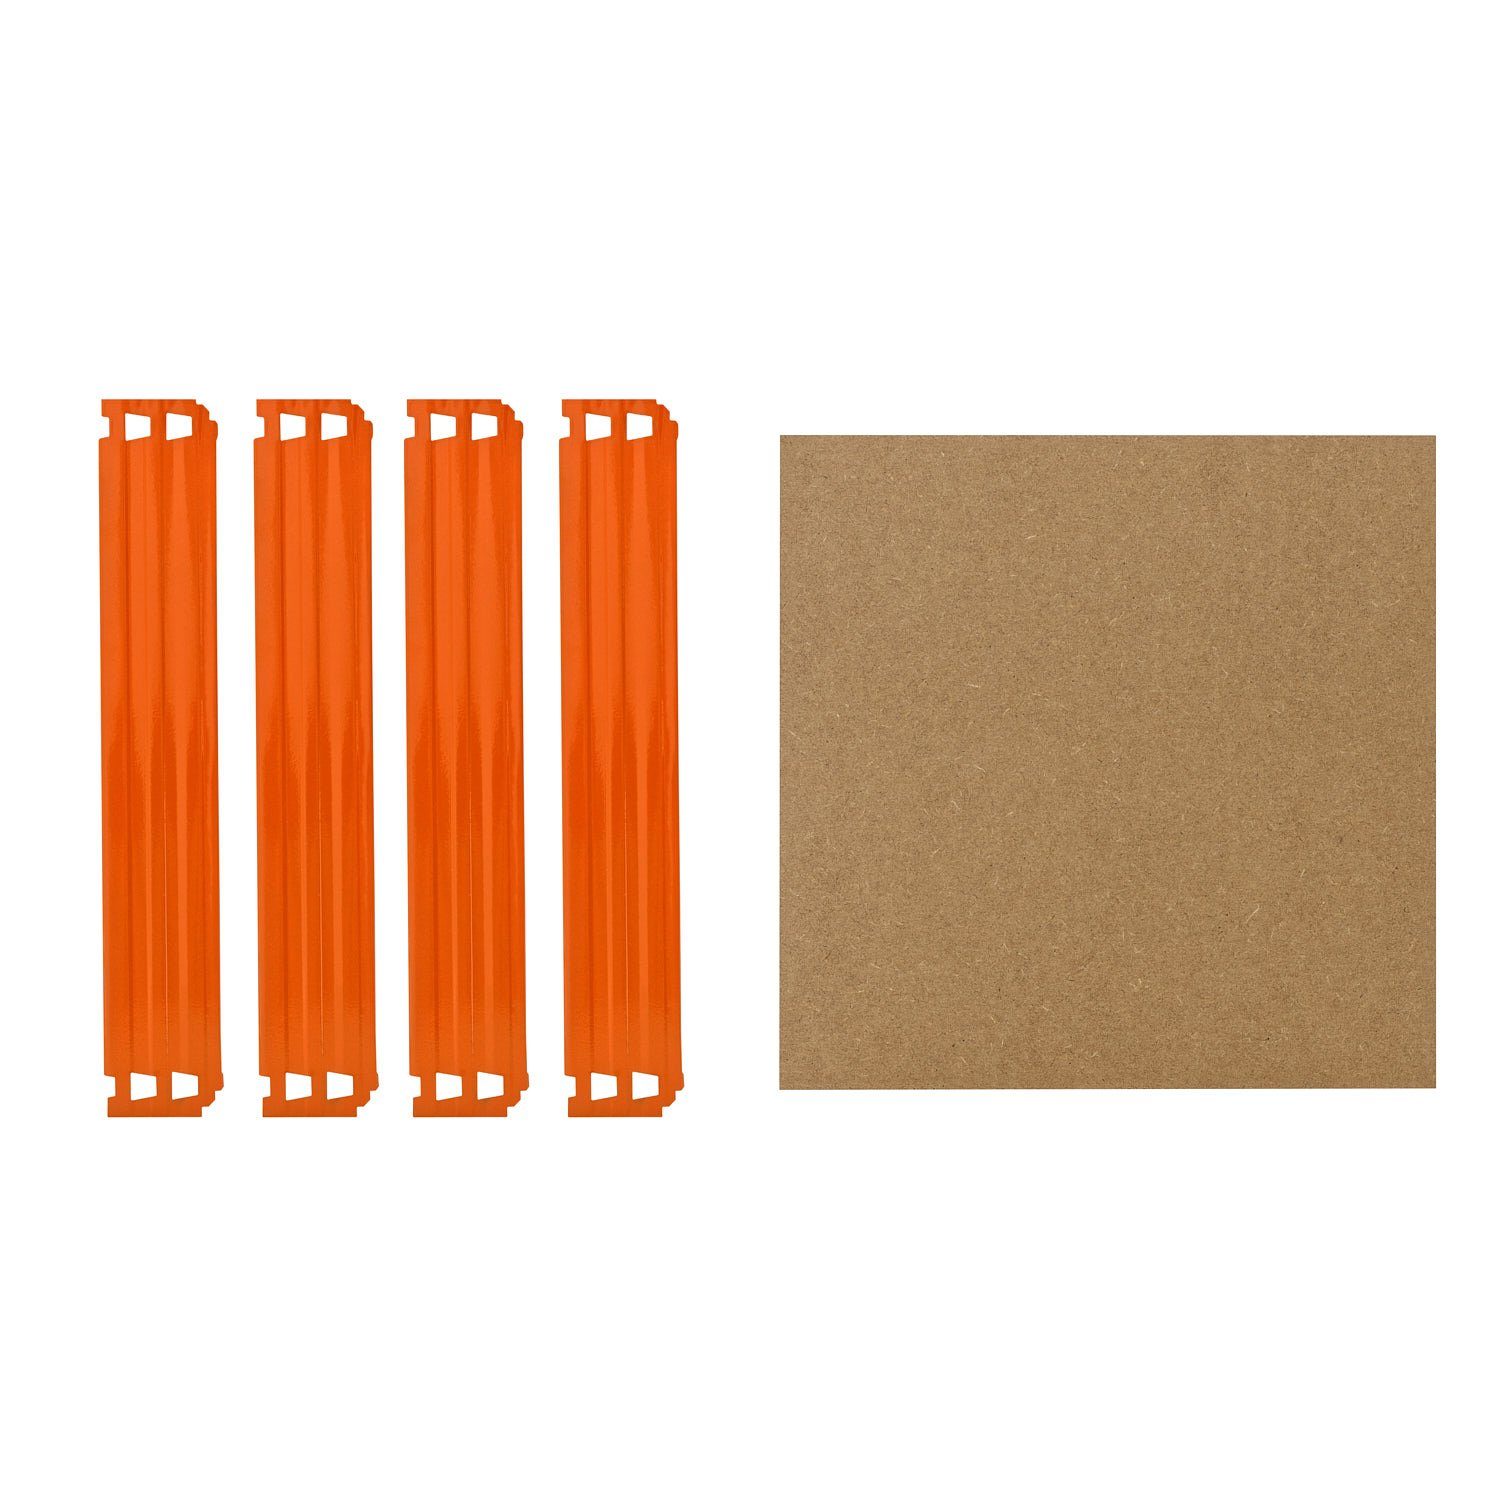 shelfplaza Schwerlastregal PROFI, Komplettes Fachboden-Set für 60x60 cm Steckregale in blau-orange, HDF-Fachboden, zusätzliche Fachböden für Schwerlastregale